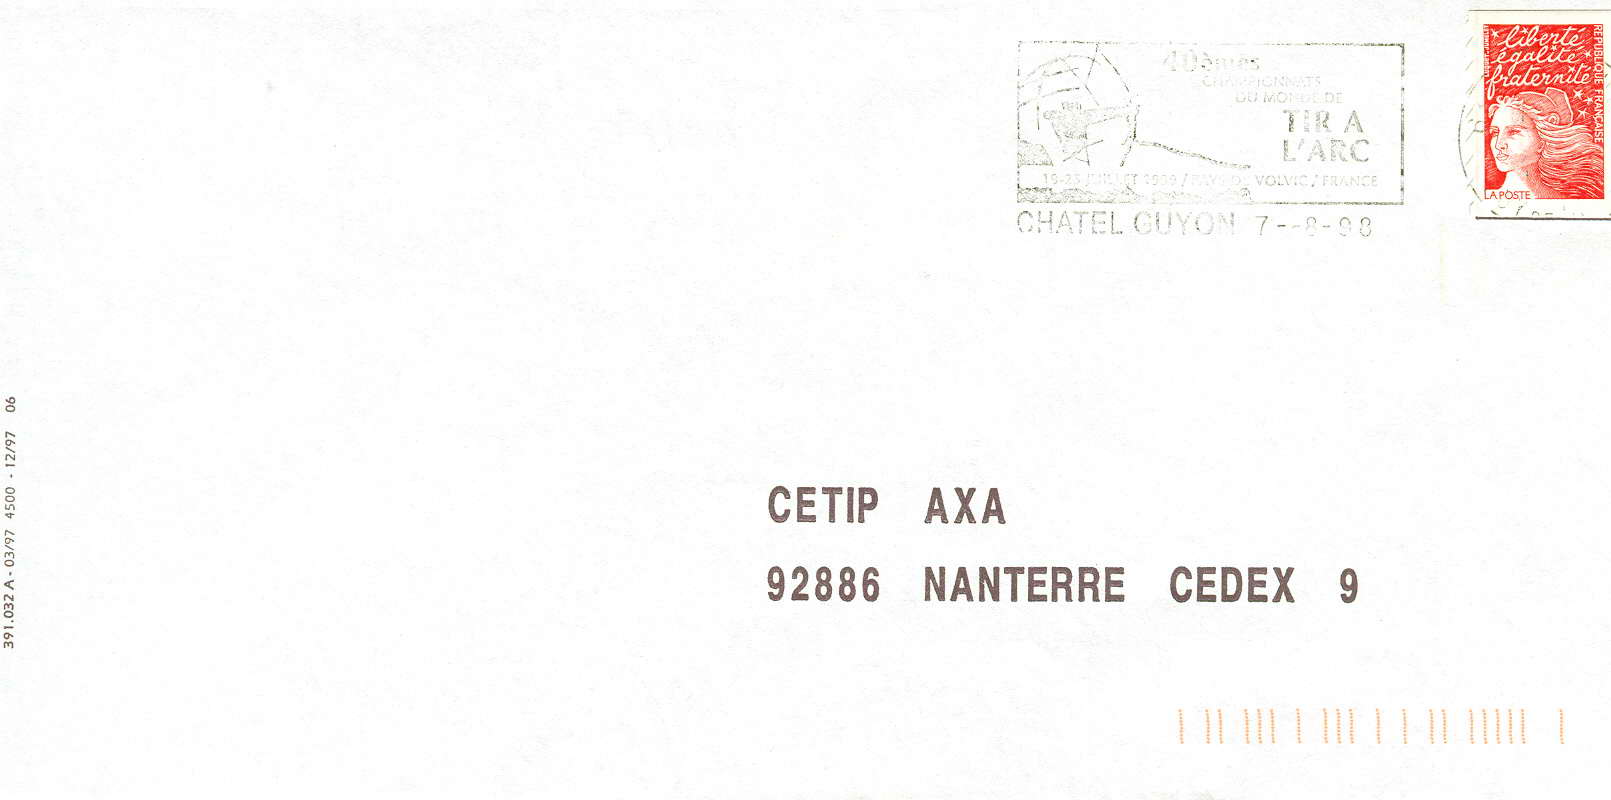 FRANCE OBLITERATION TEMPORAIRE 1998  CHATEL GUYON CHAMPIONNATS DU MONDE DE TIR A L'ARC - Tir à L'Arc